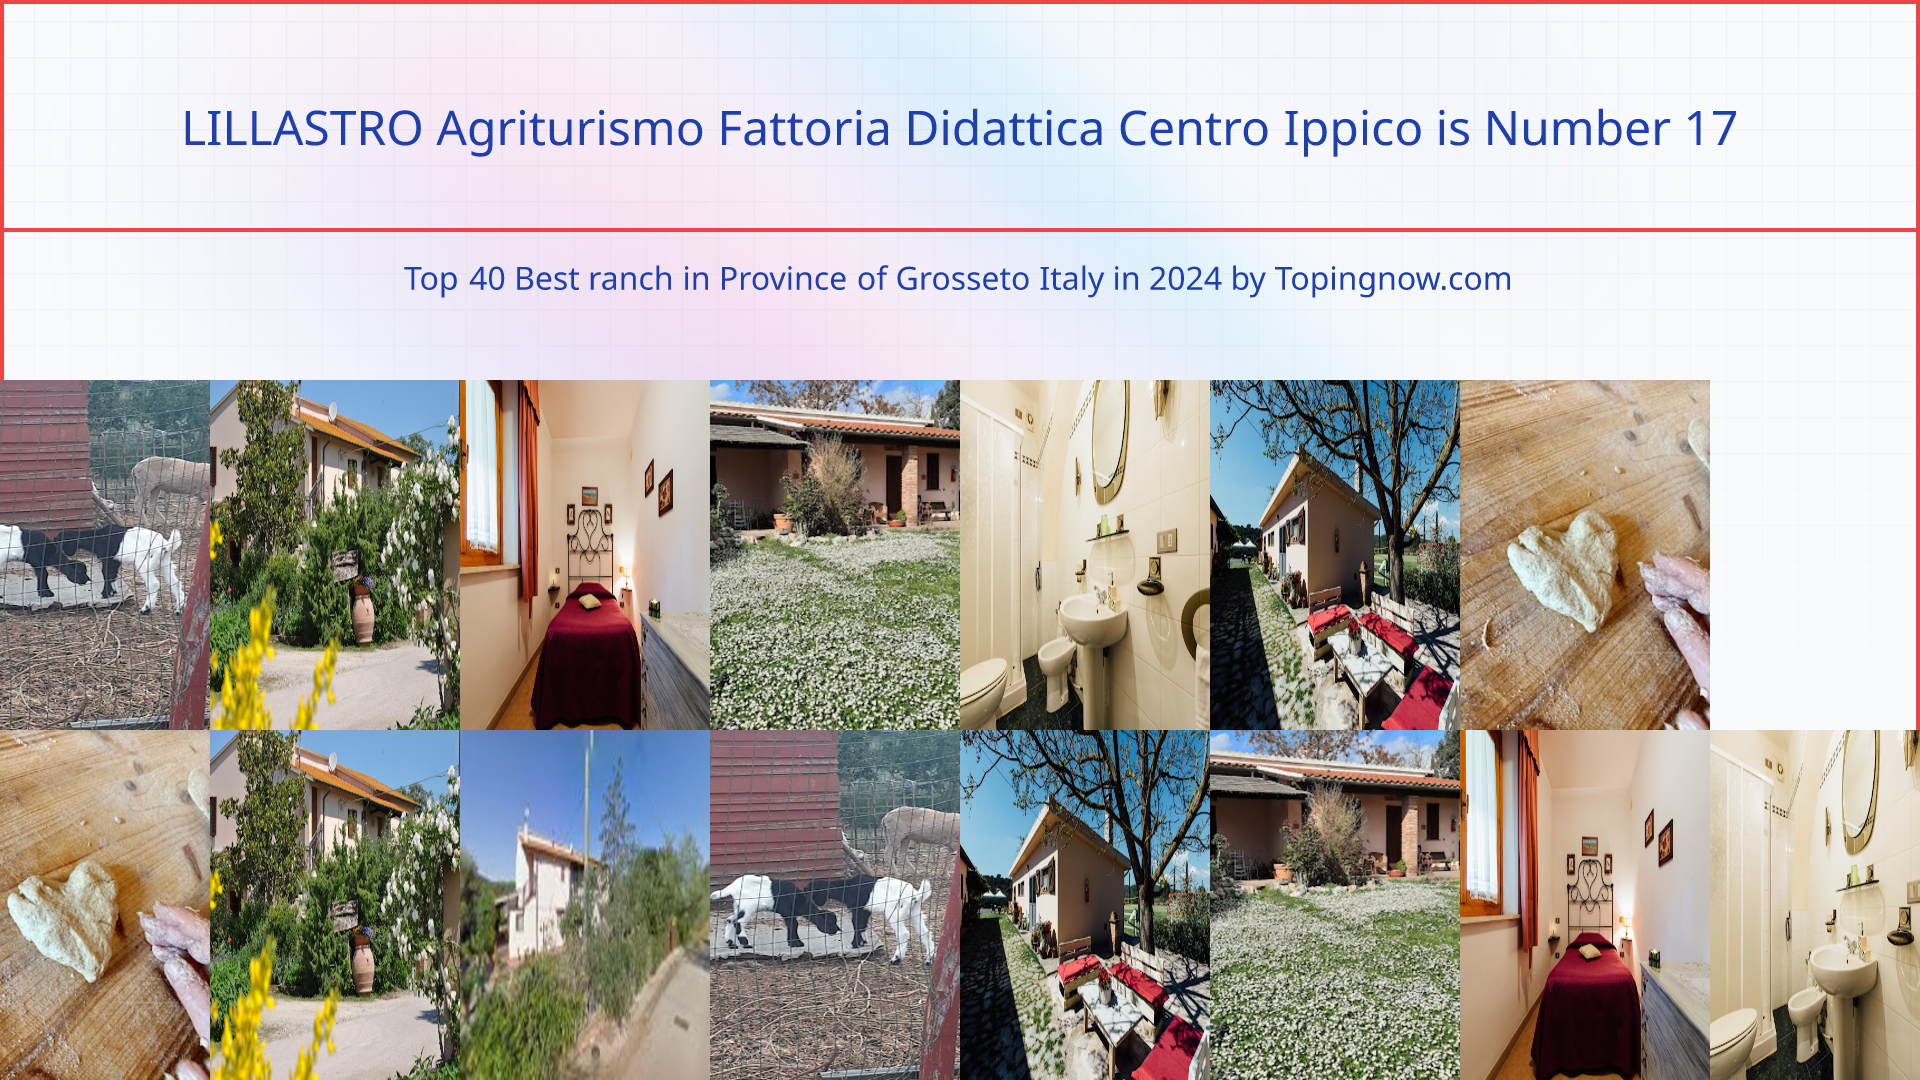 LILLASTRO Agriturismo Fattoria Didattica Centro Ippico: Top 40 Best ranch in Province of Grosseto Italy in 2024